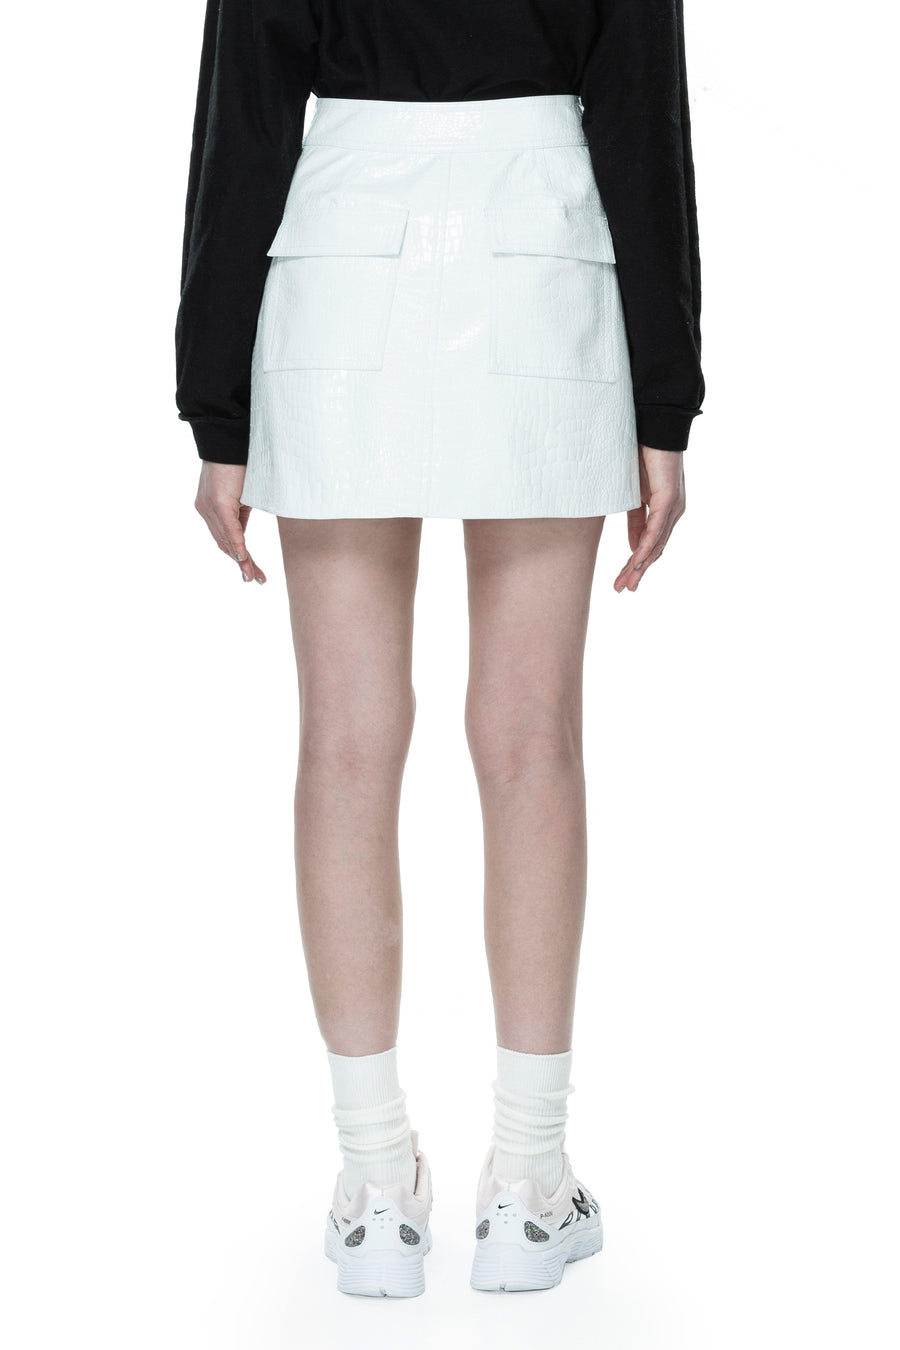 White Croc Patent Mini Skirt